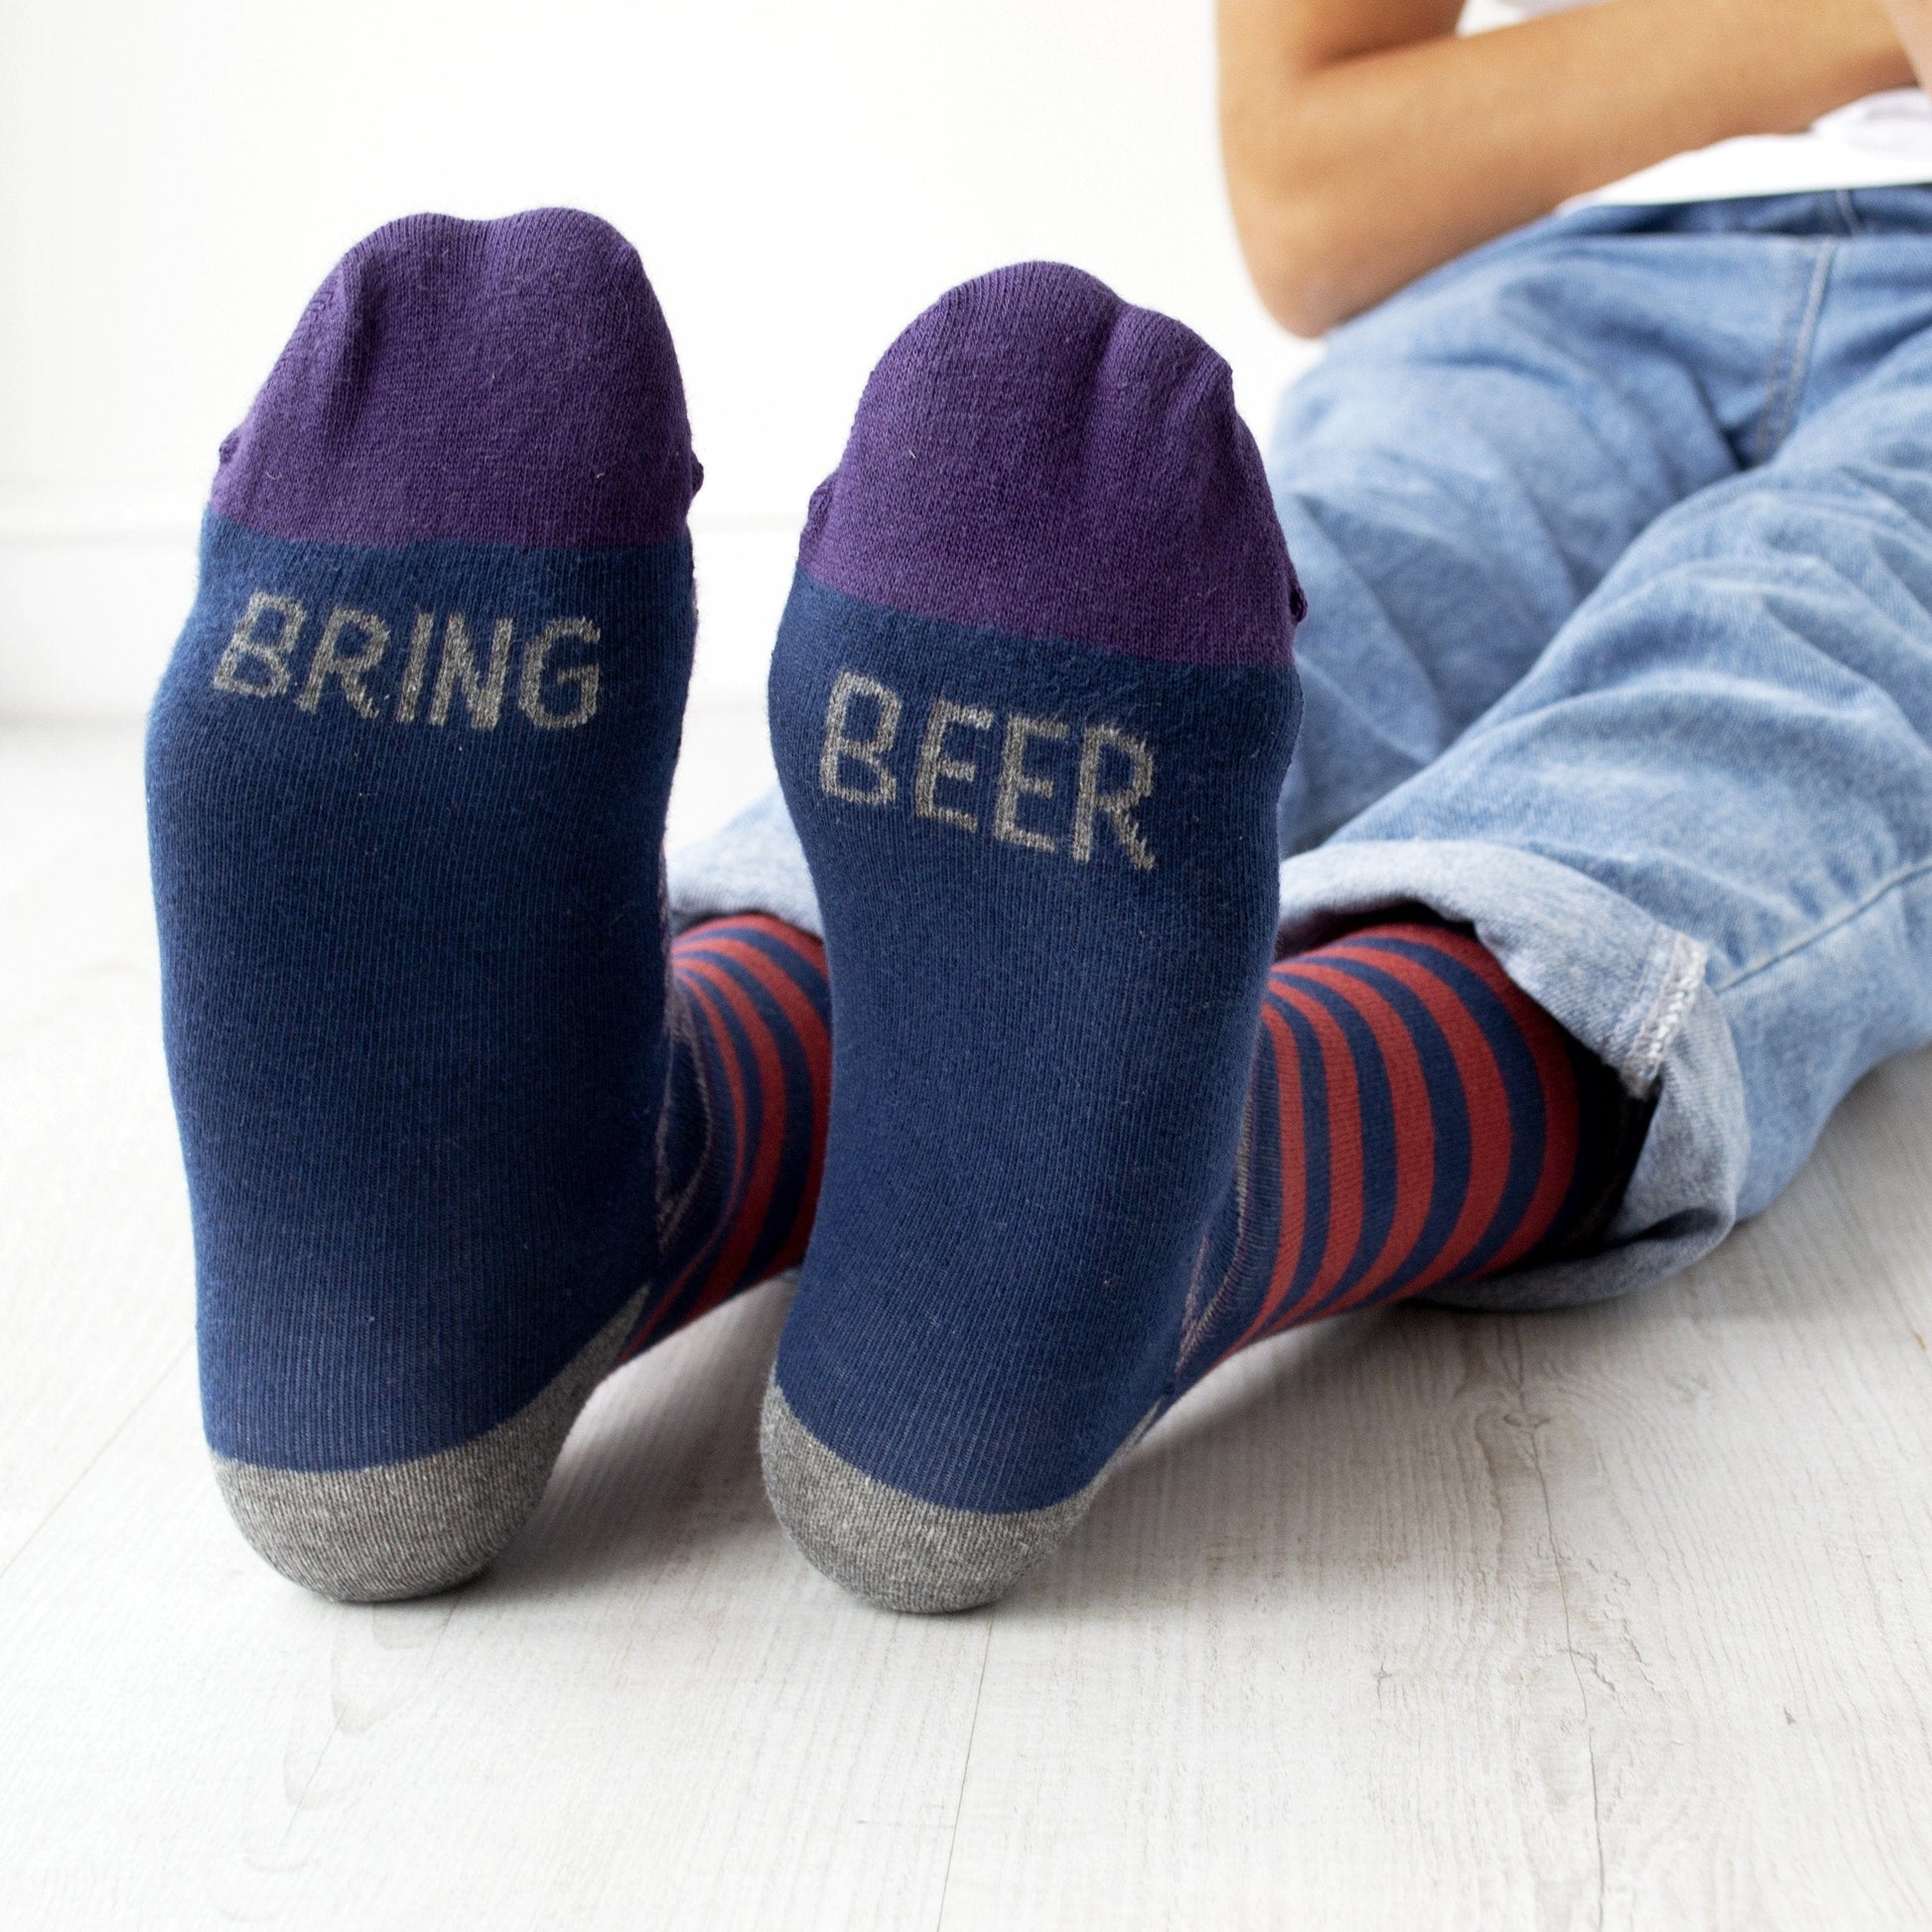 Bring Beer Patterned Slogan Socks, Socks, - ALPHS 